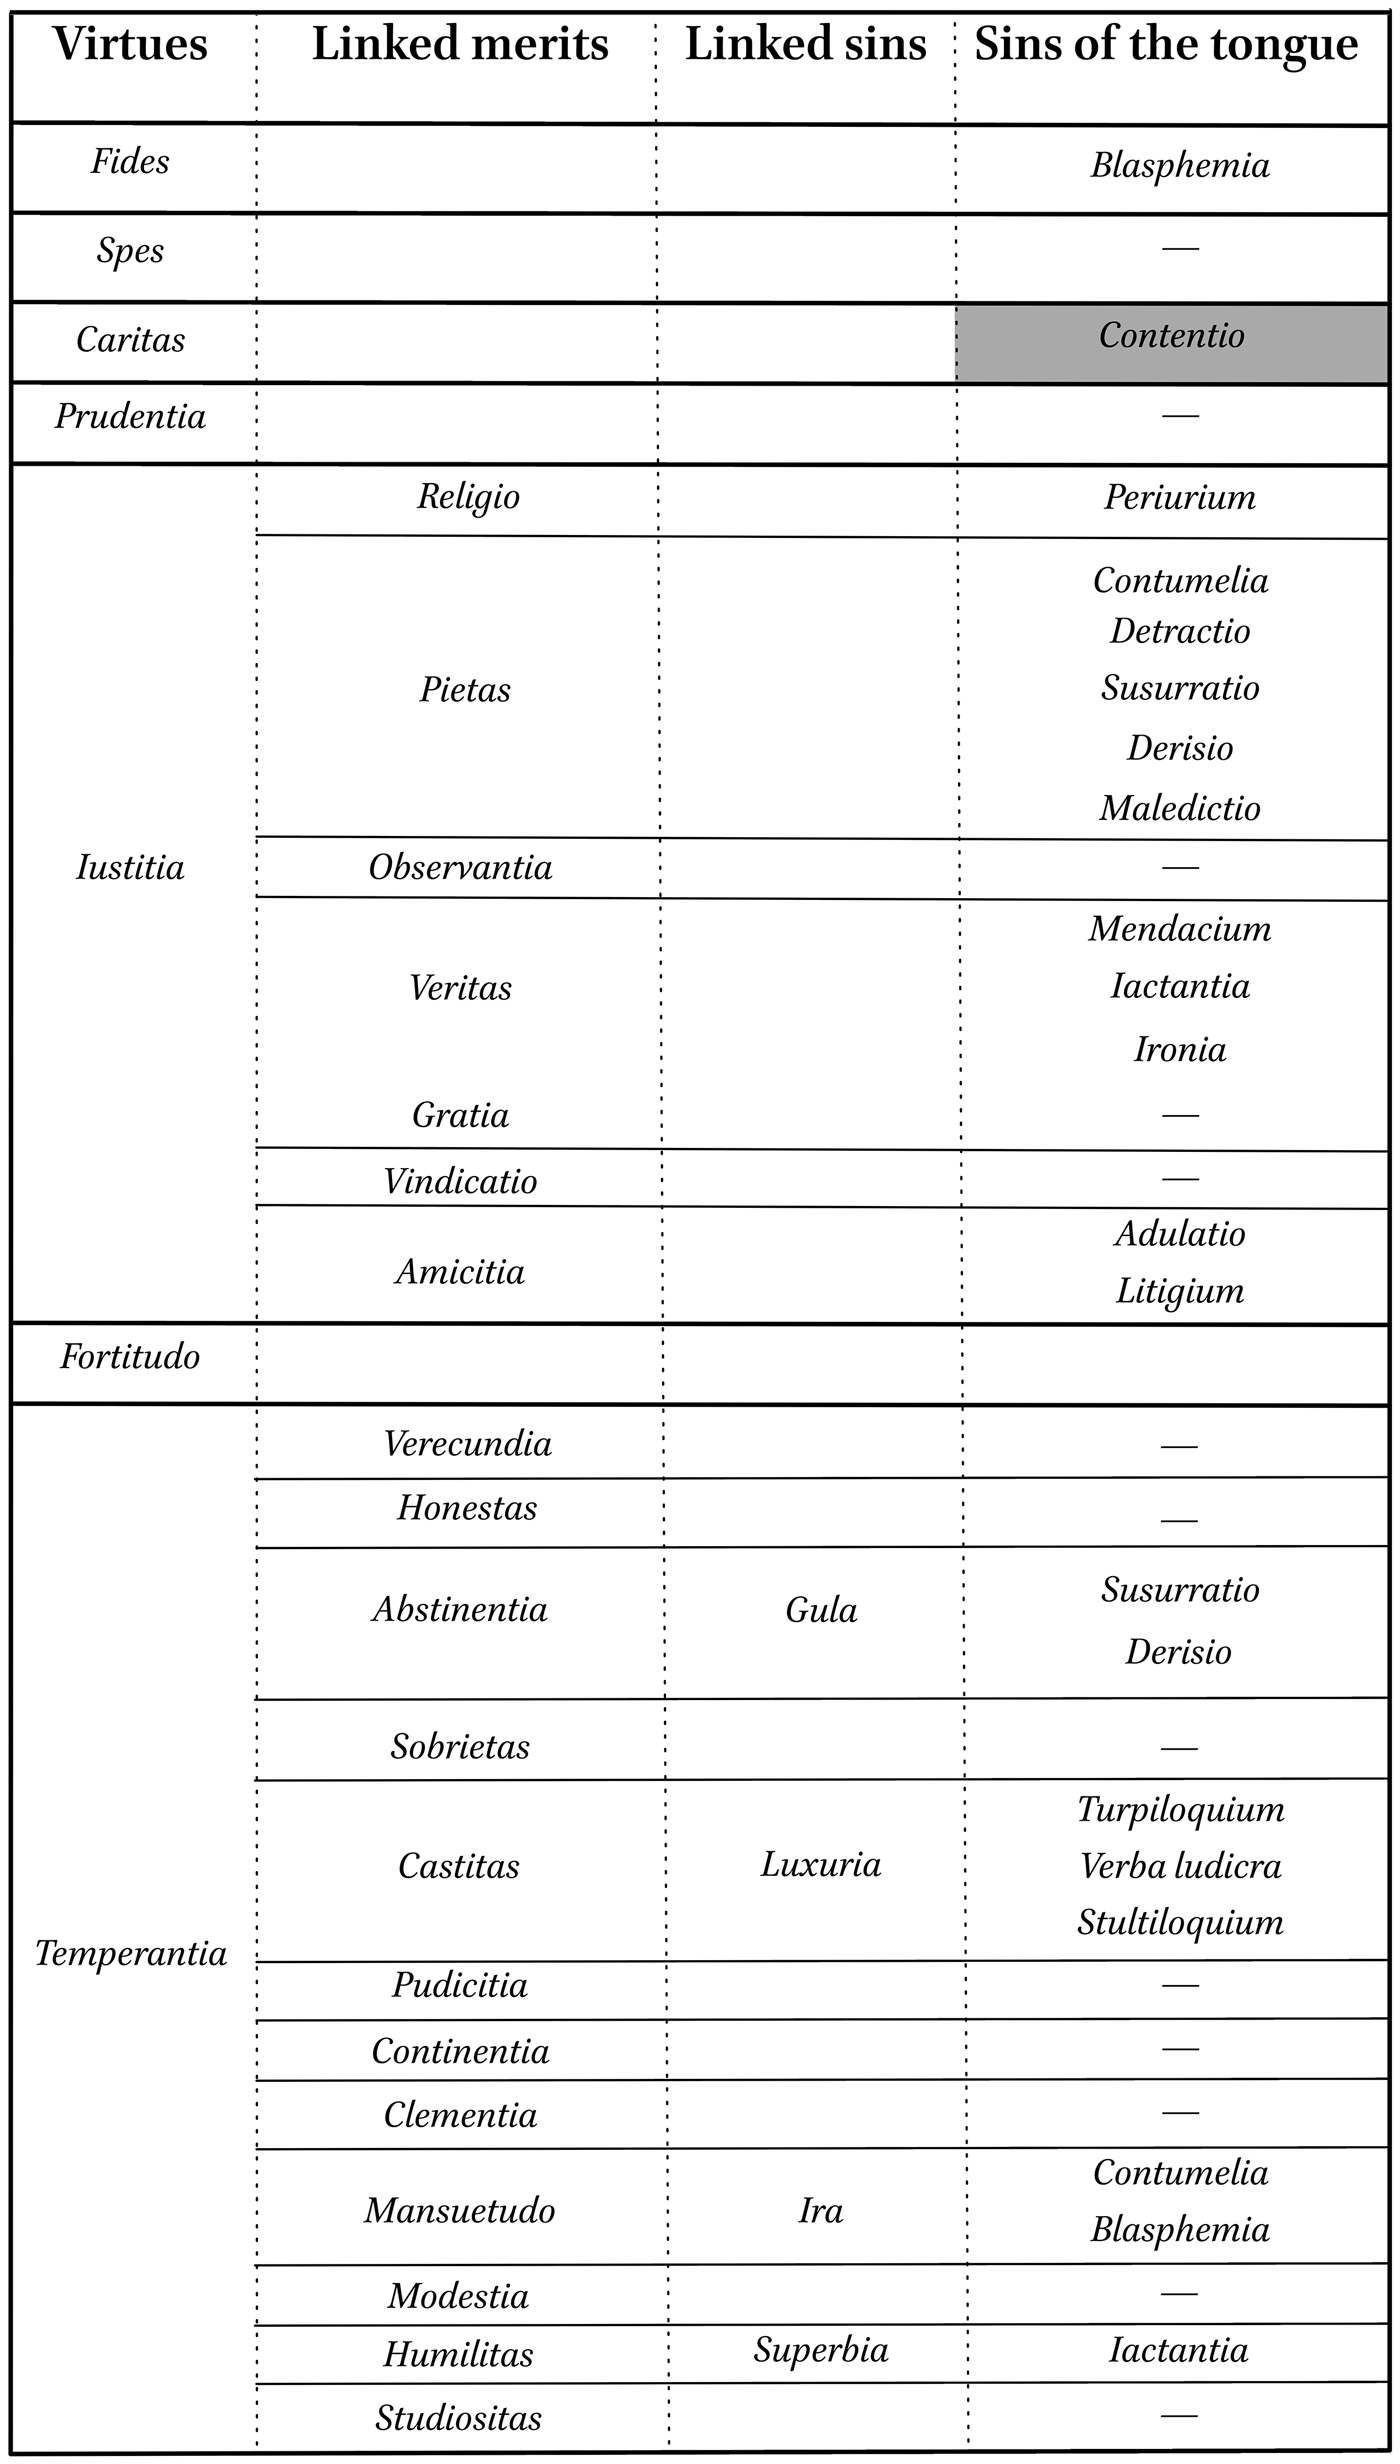 Introduction in: Antonio da Rho, Three Dialogues against Lactantius